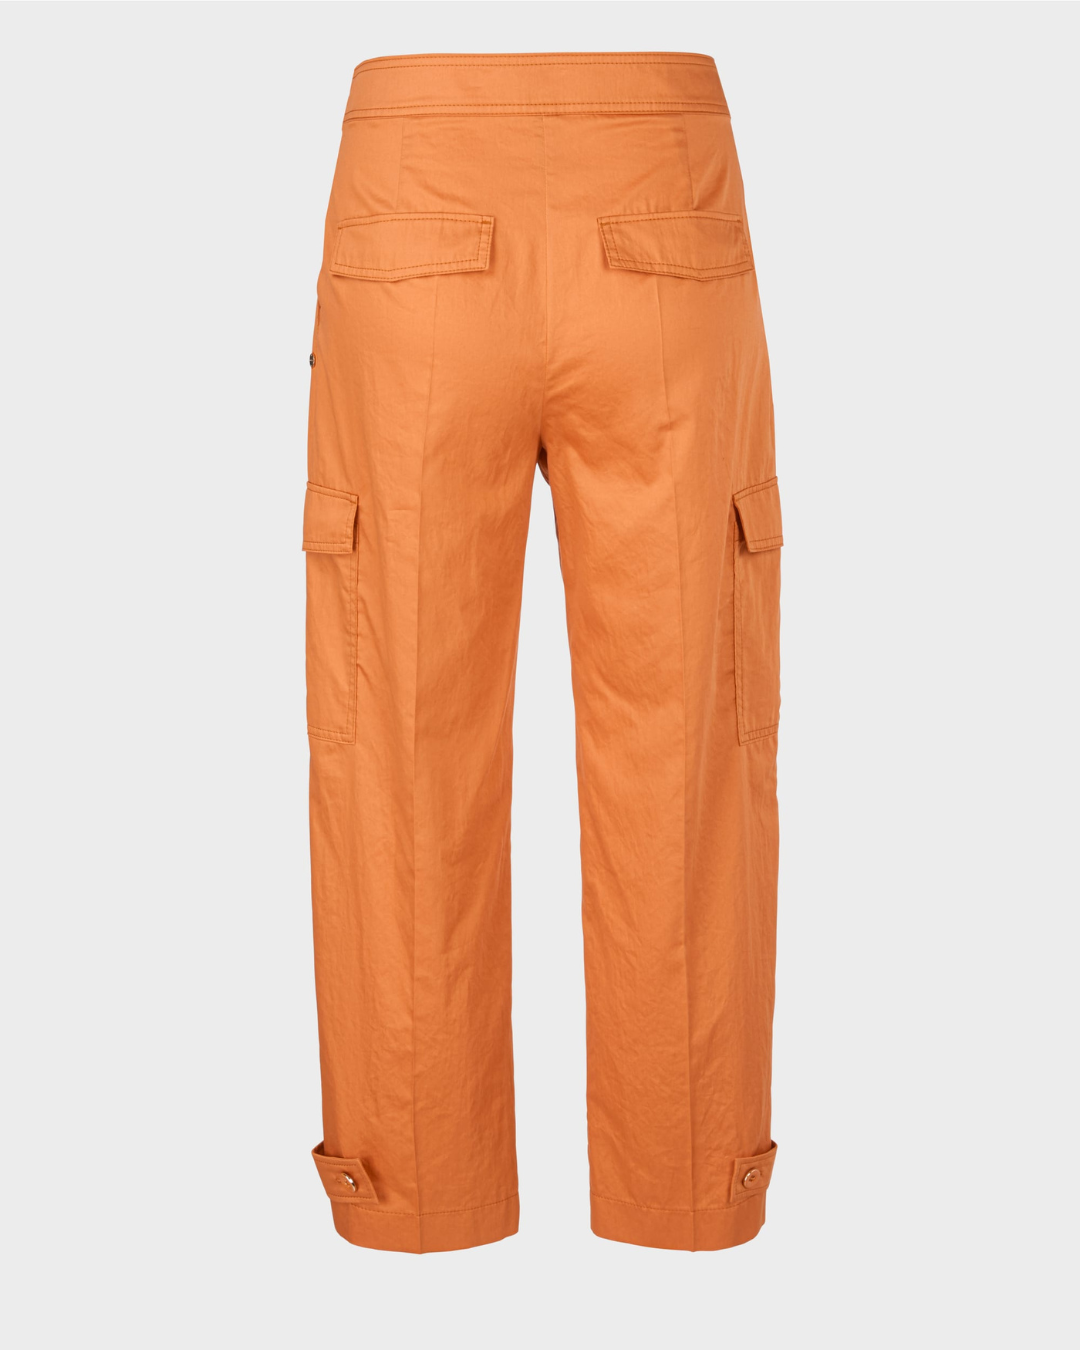 WELS model - trendy cargo pants